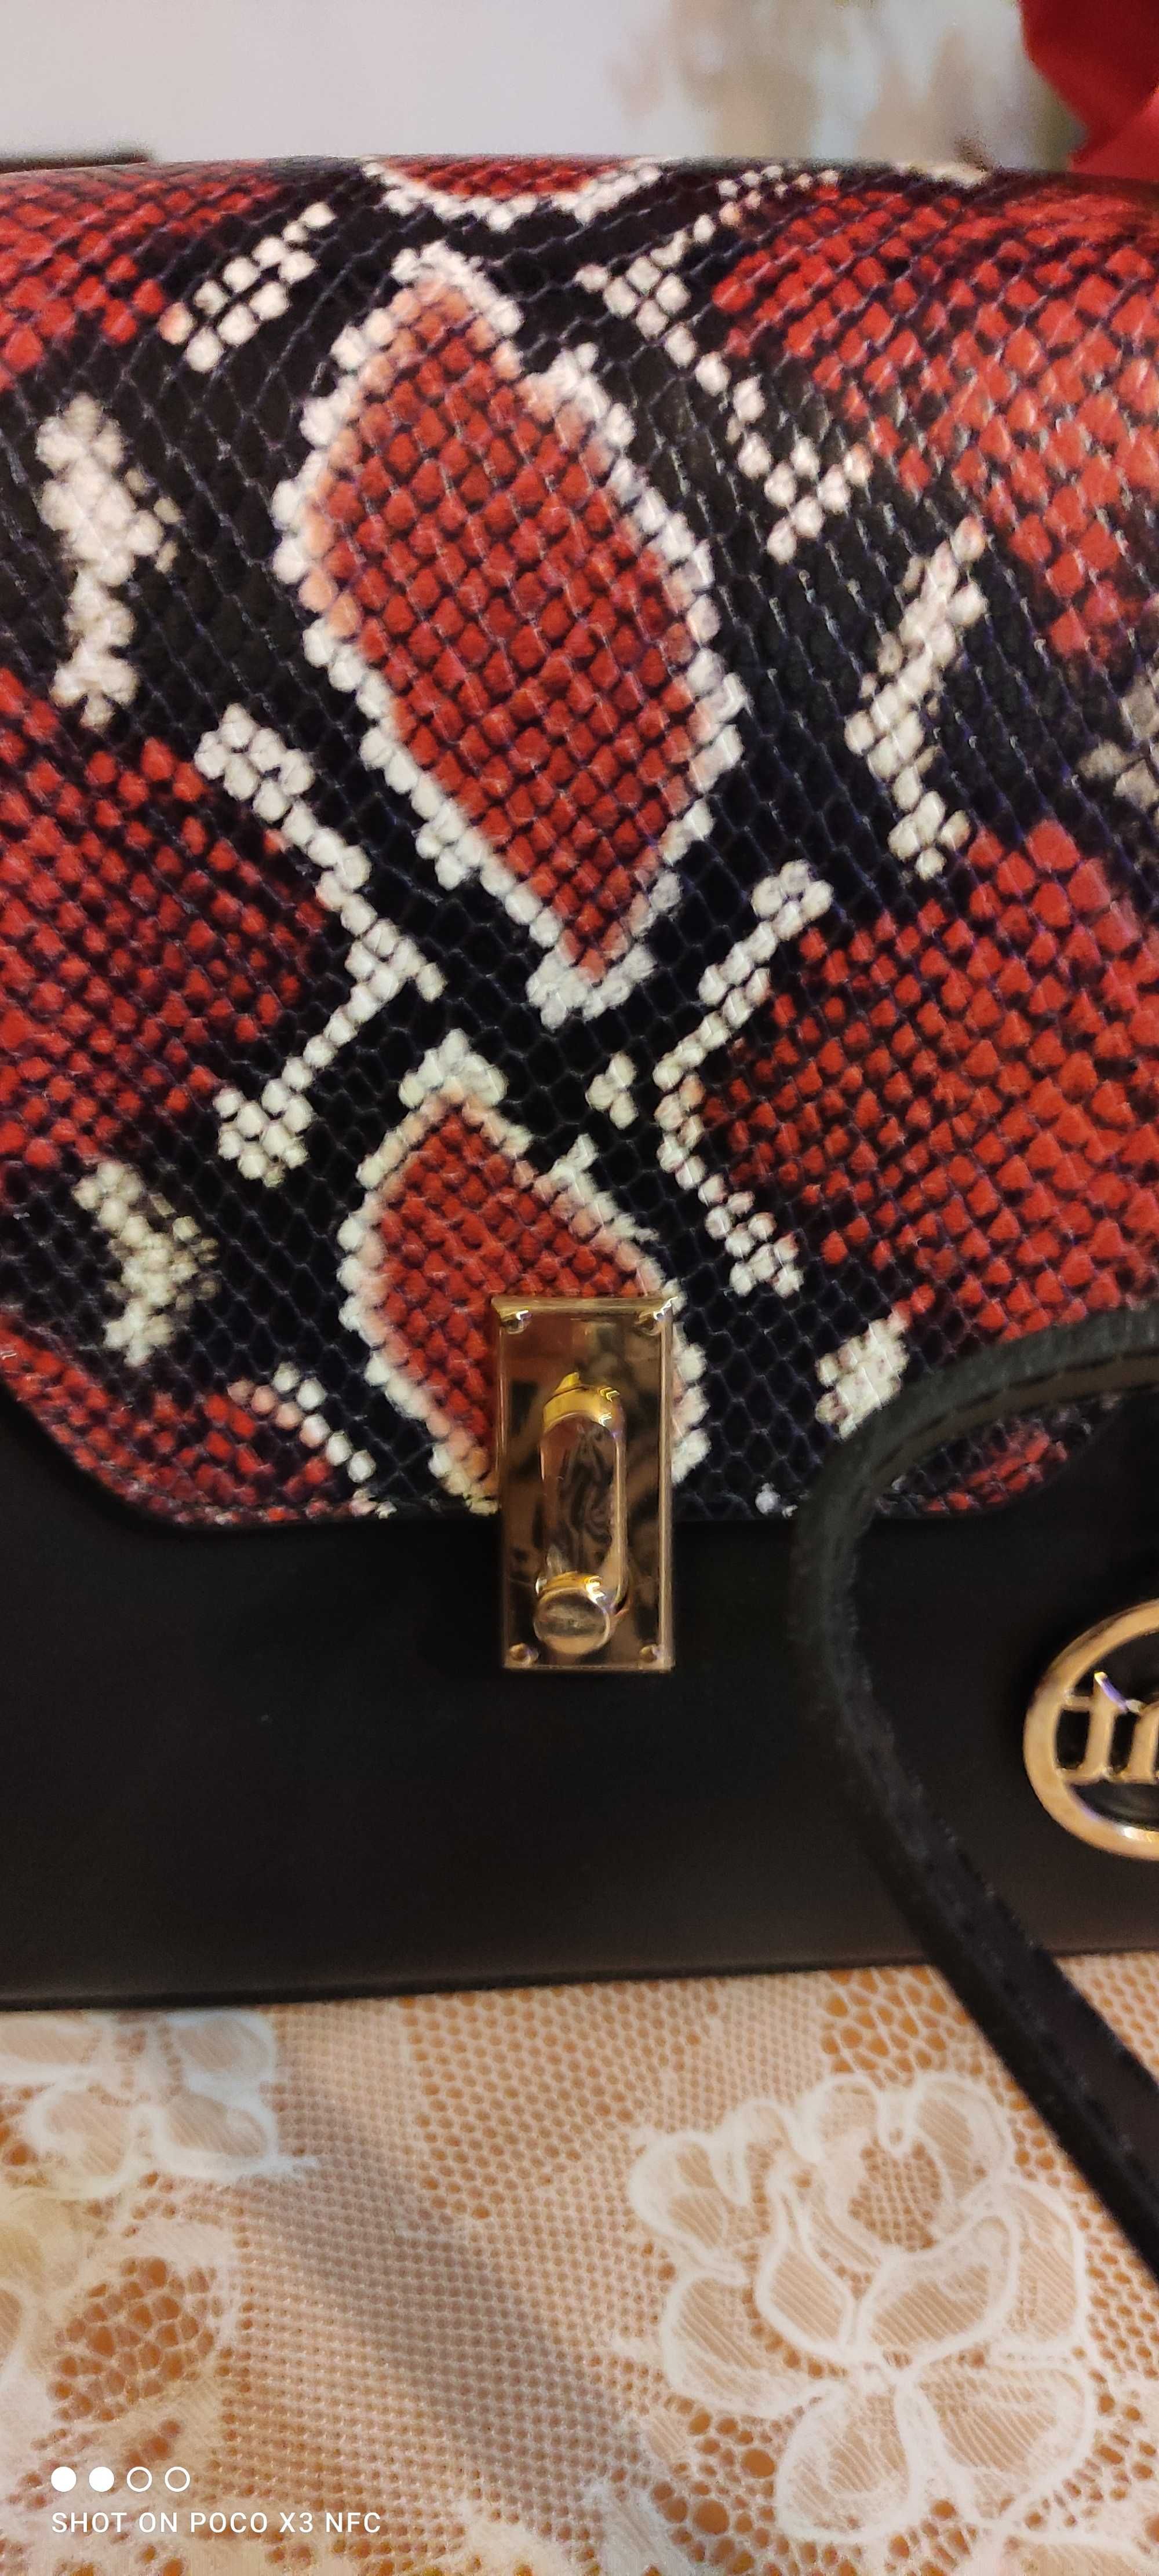 Чанта със змийски мотиви от Mia Tomazzi в червено и черно